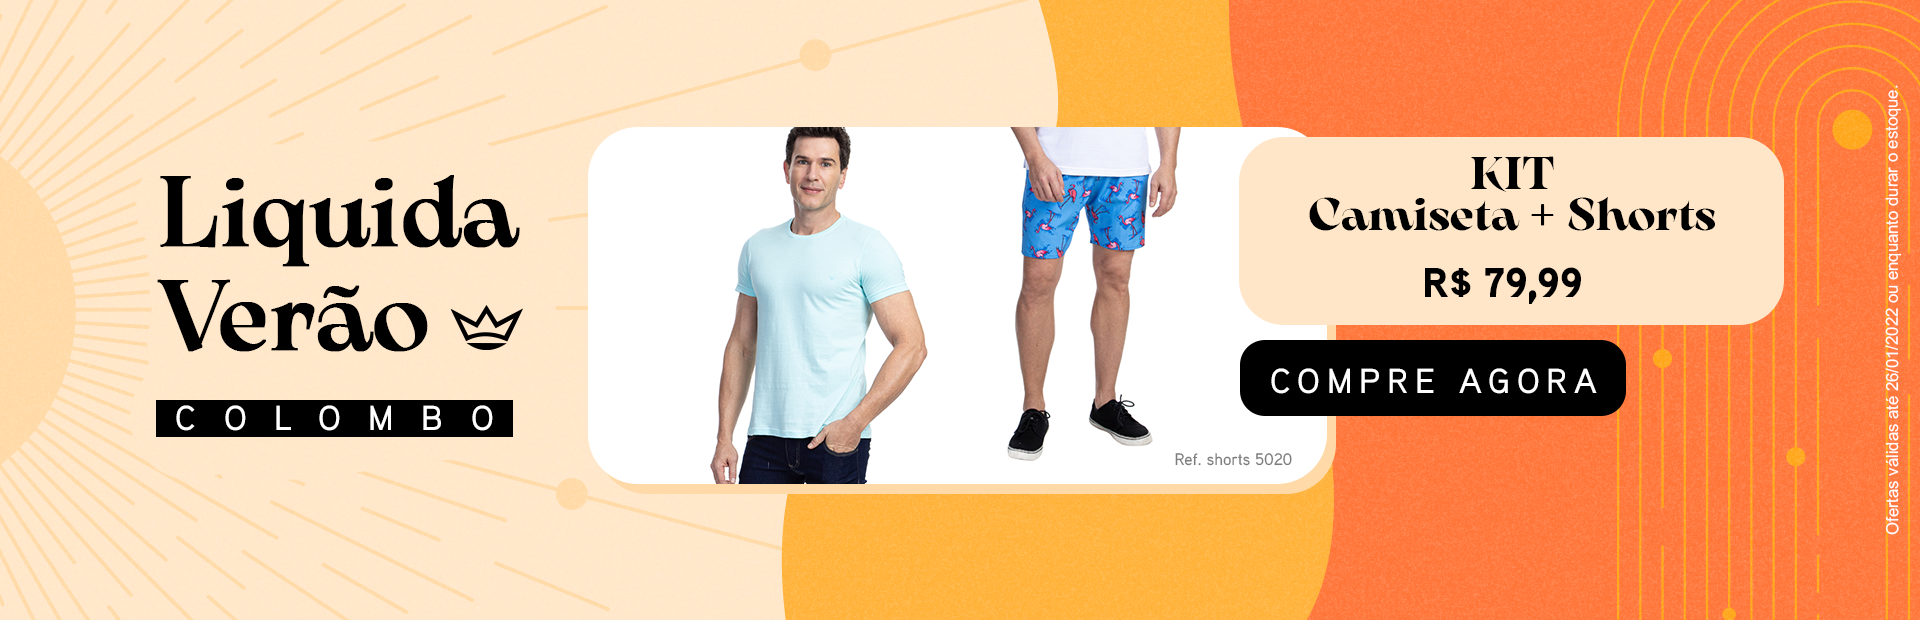 Banner Promocional Liquida Verão. Homem com camiseta básica e shorts ambas da marca Camisaria Colombo. Kit Camiseta + Shorts R$ 79,99 Compre Agora